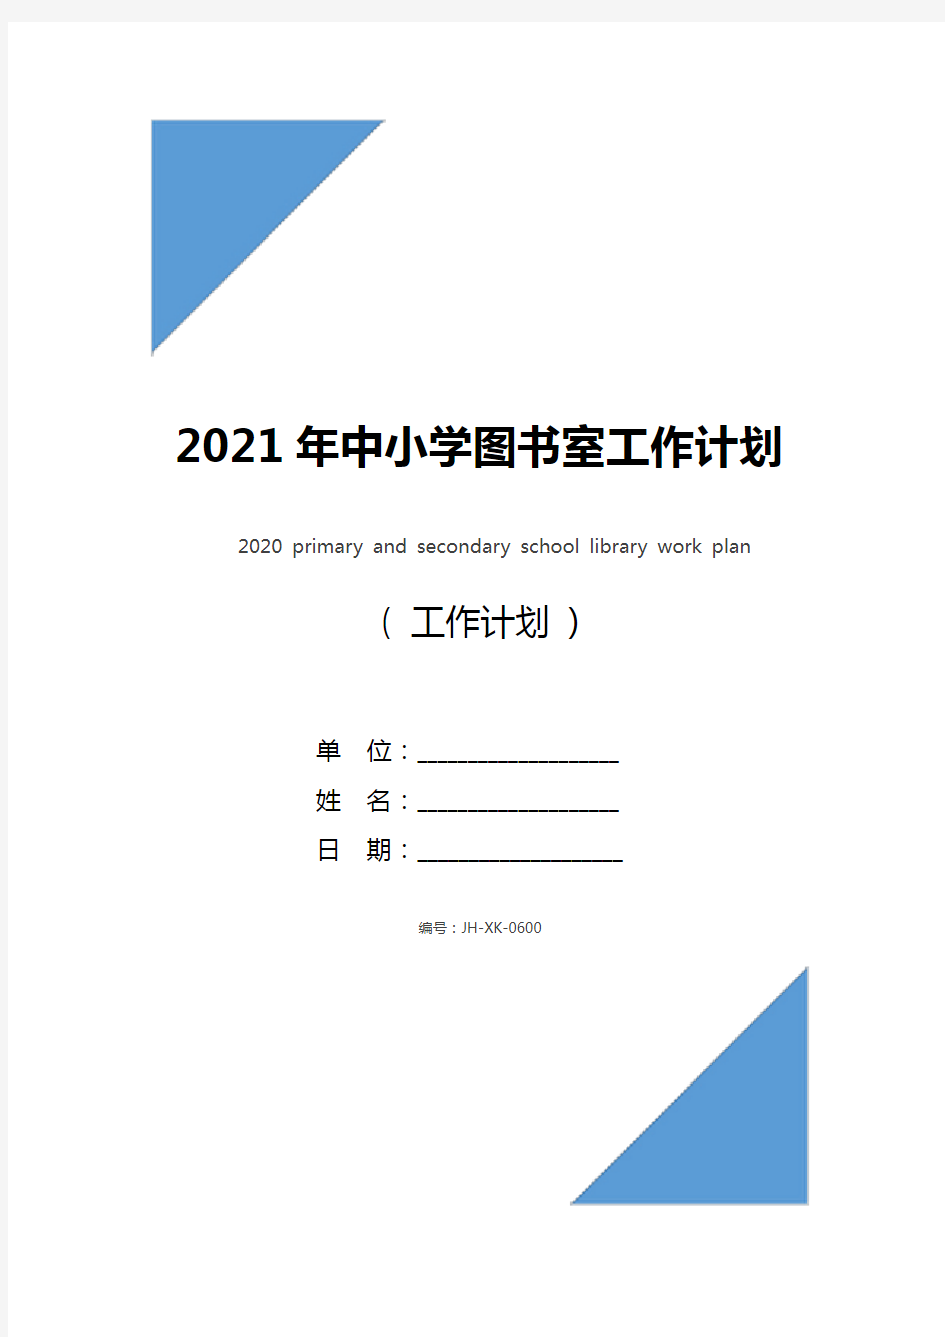 2021年中小学图书室工作计划(最新版)